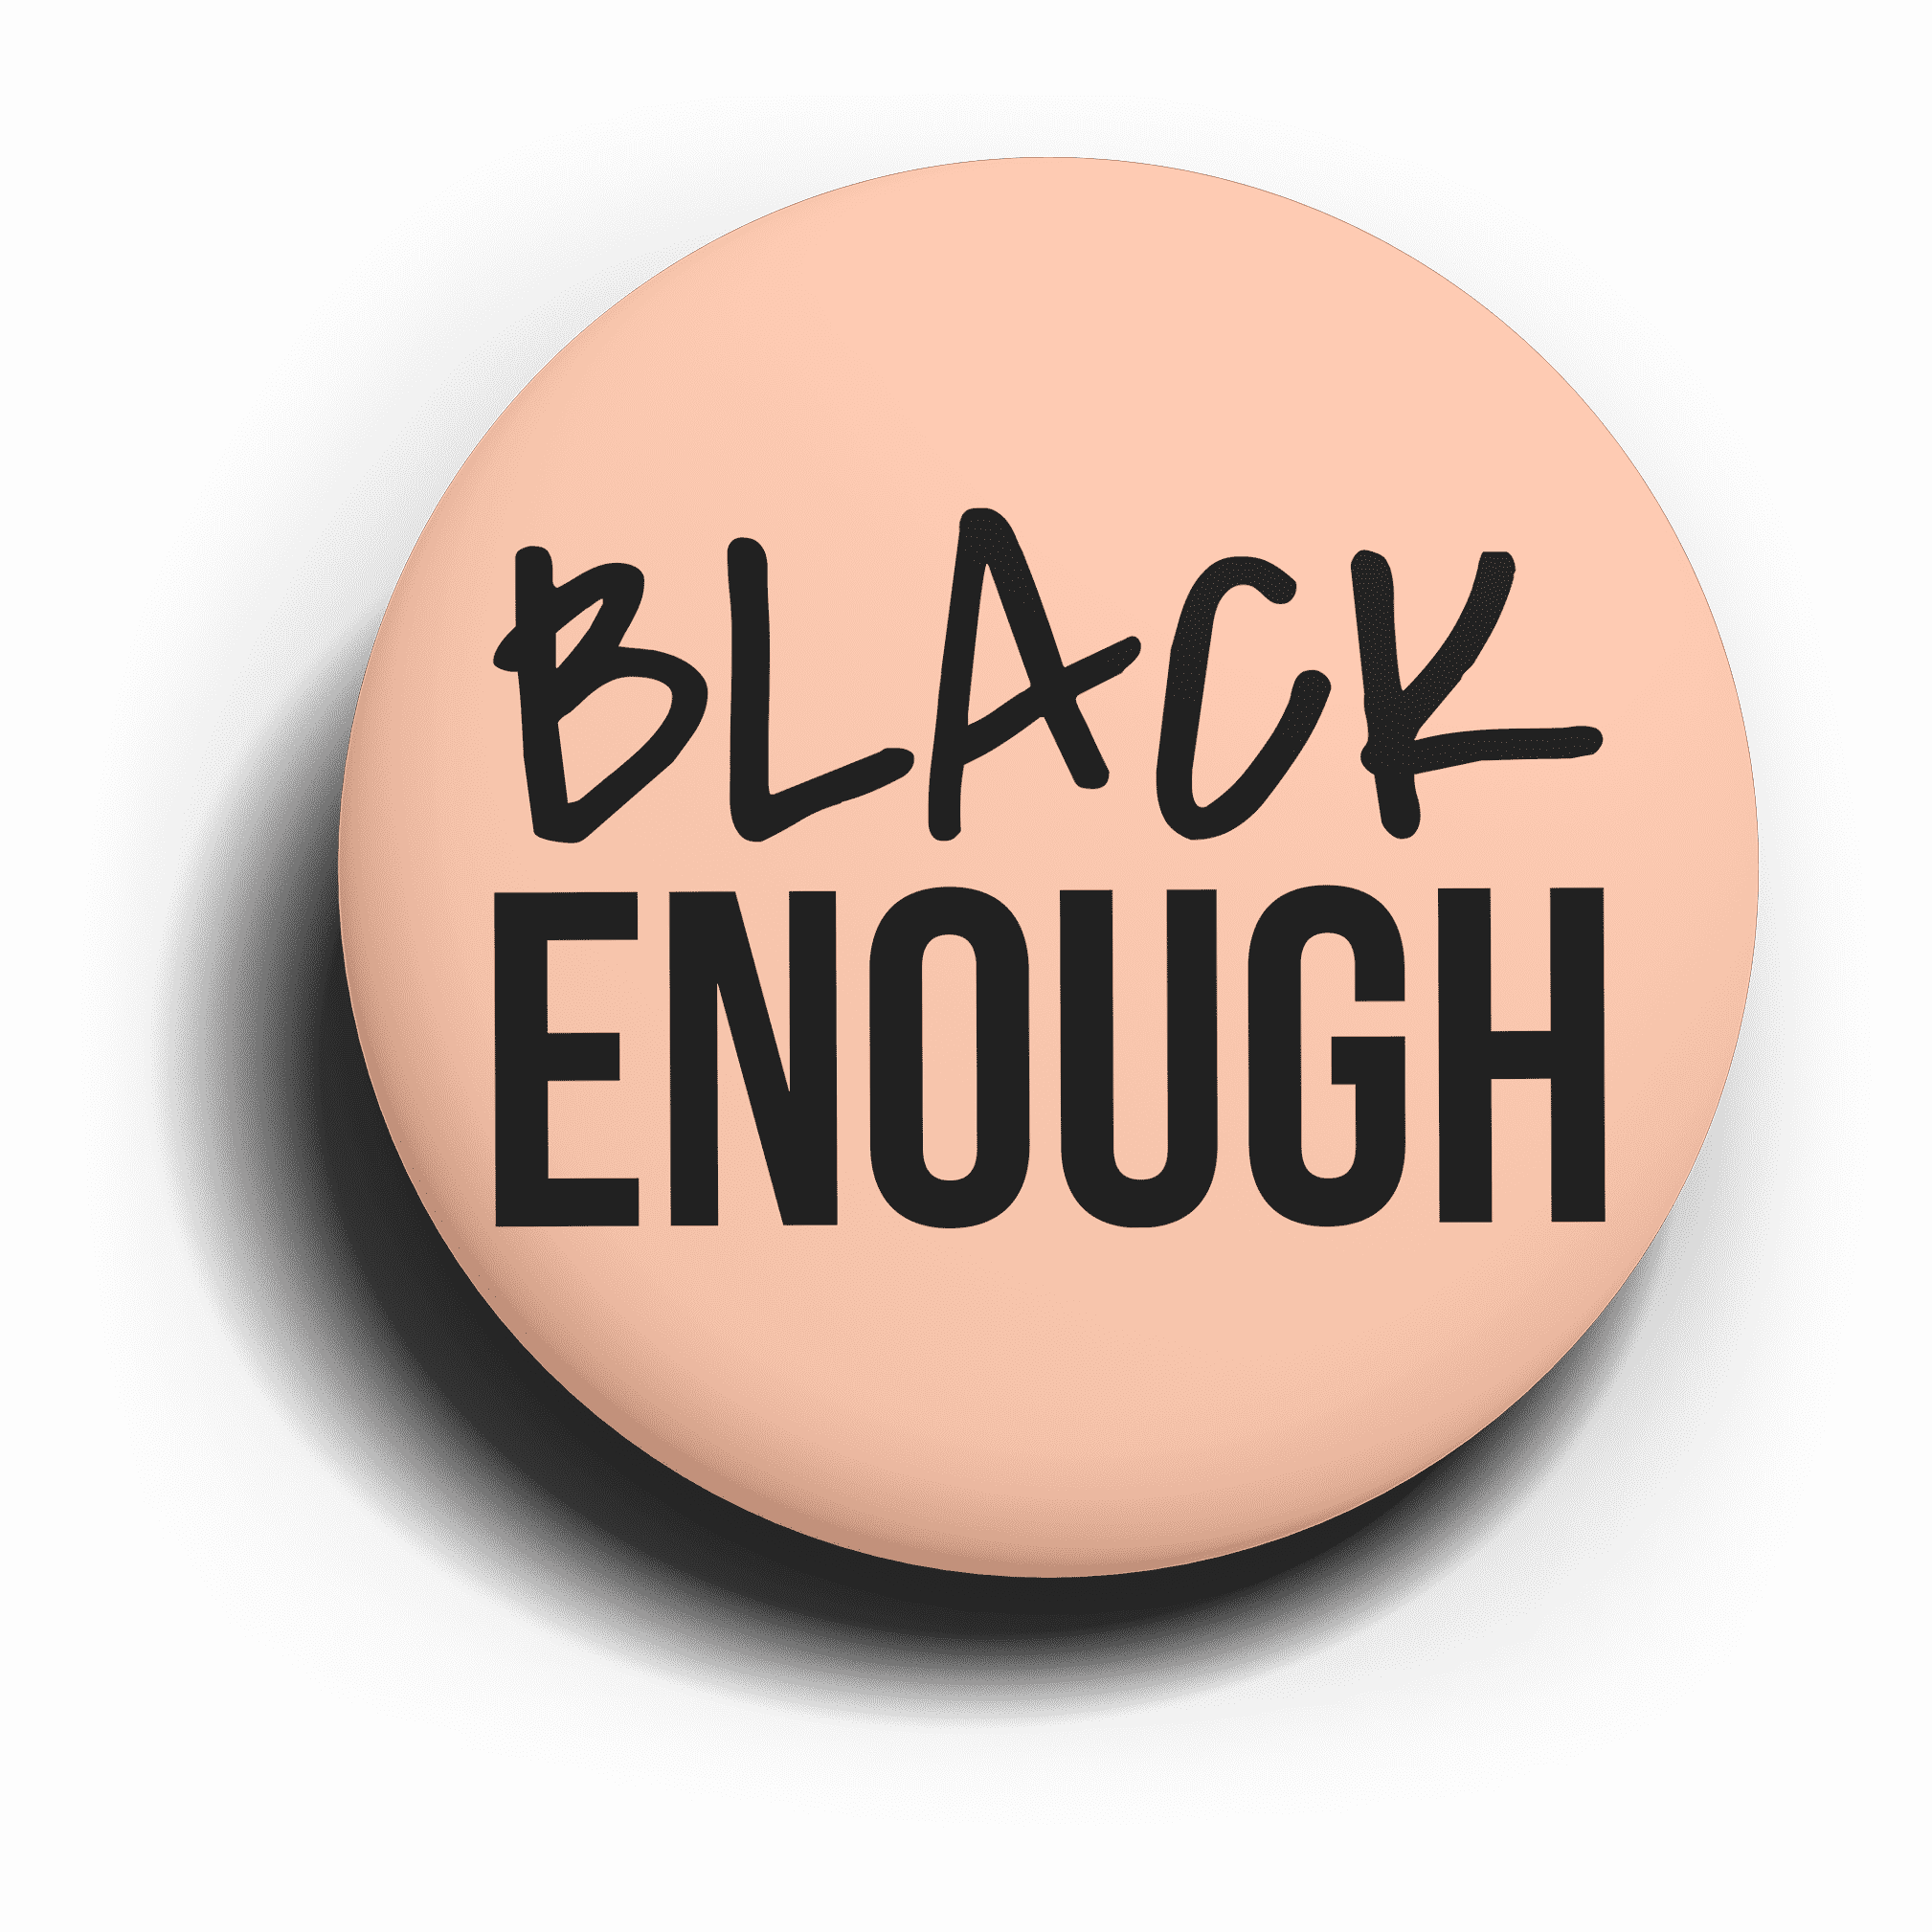 (Melanin) Black Enough